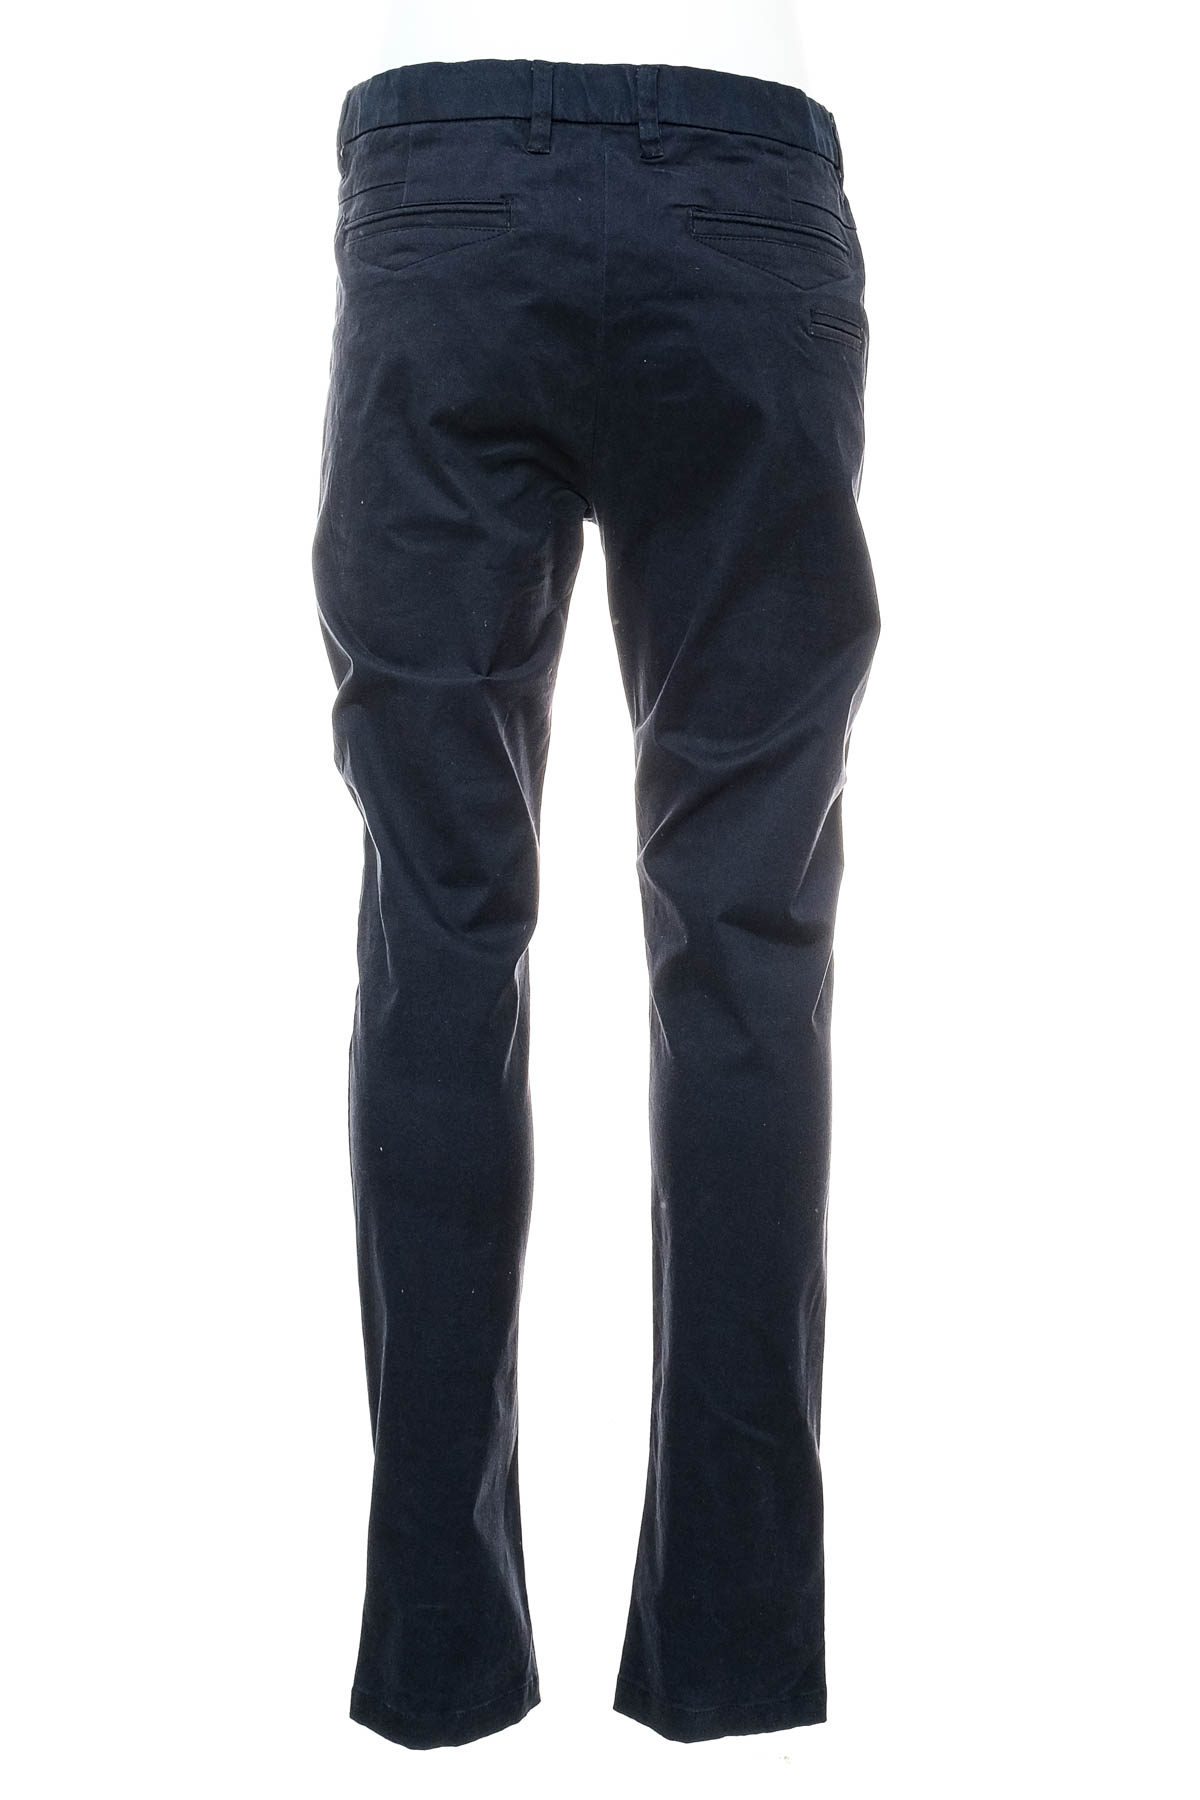 Pantalon pentru bărbați - Tailor & Son - 1